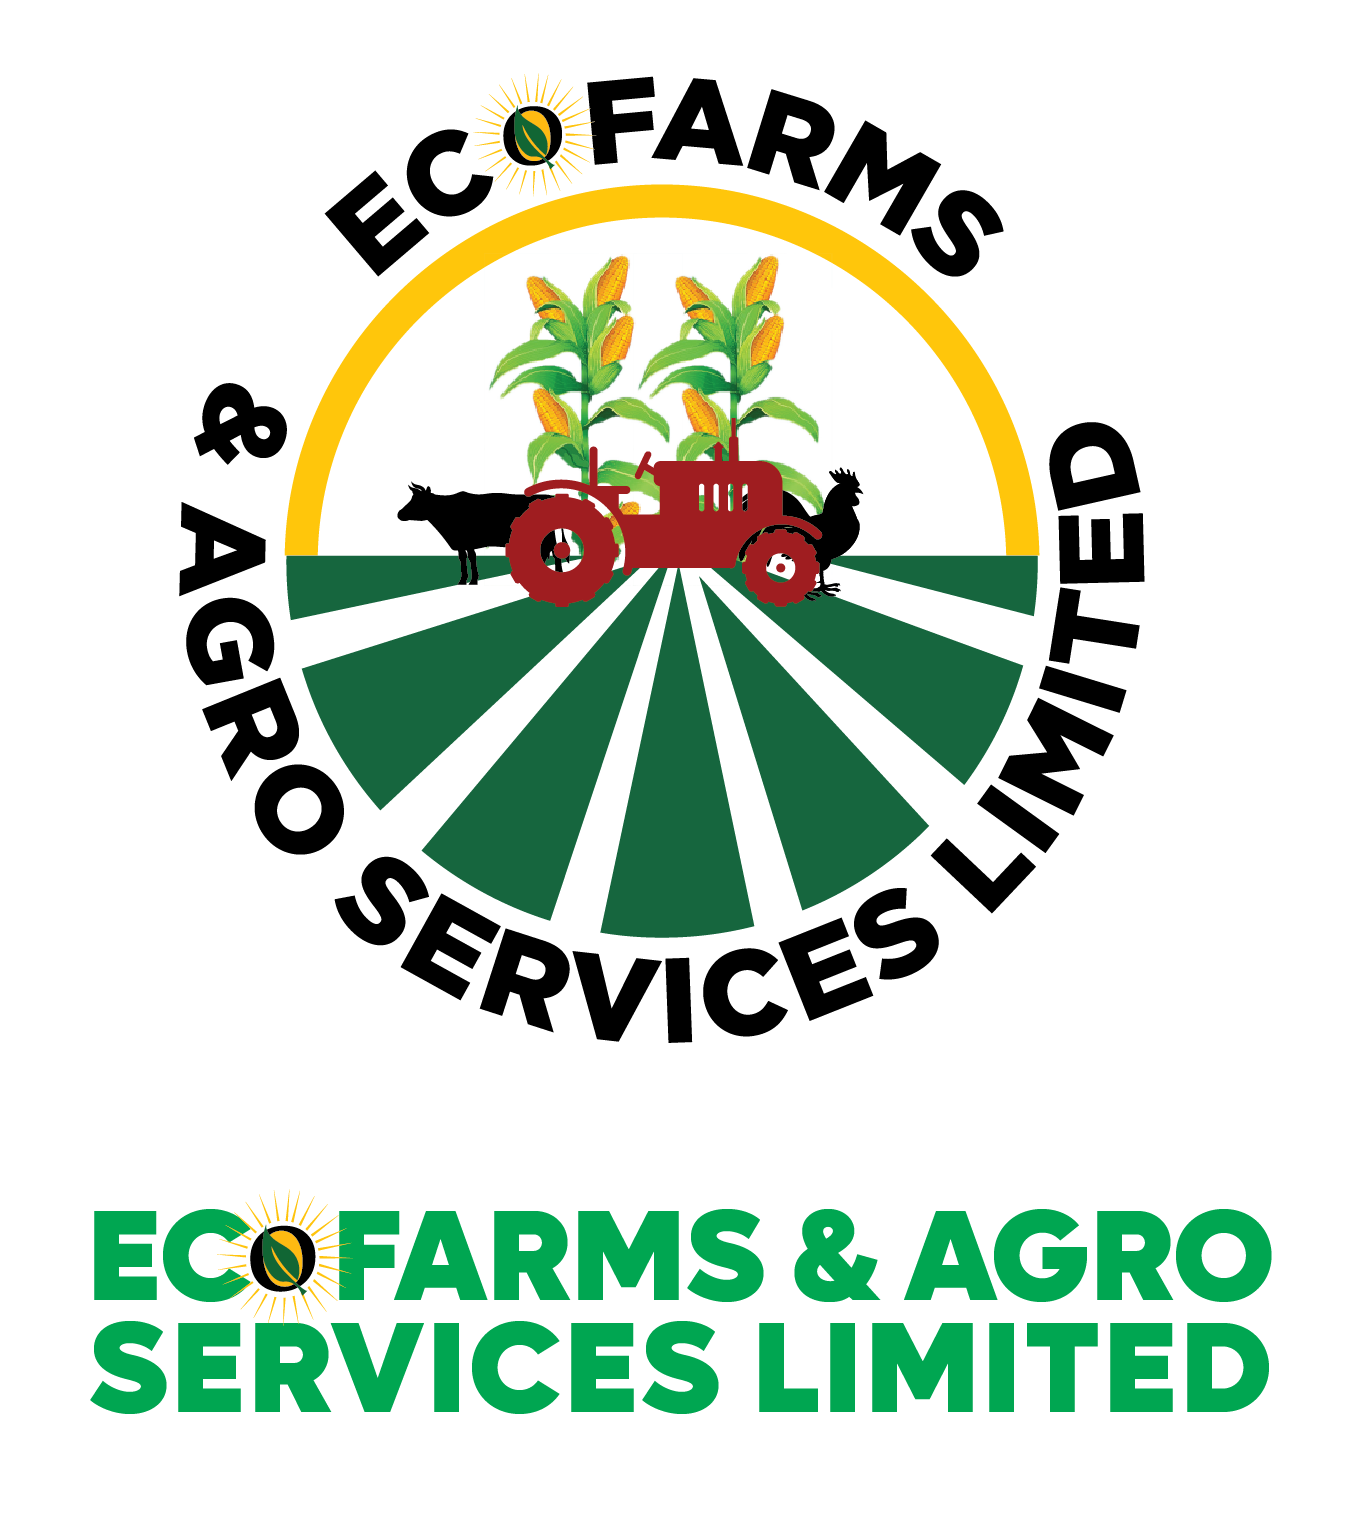 ecofarms and agroservices ltd logo